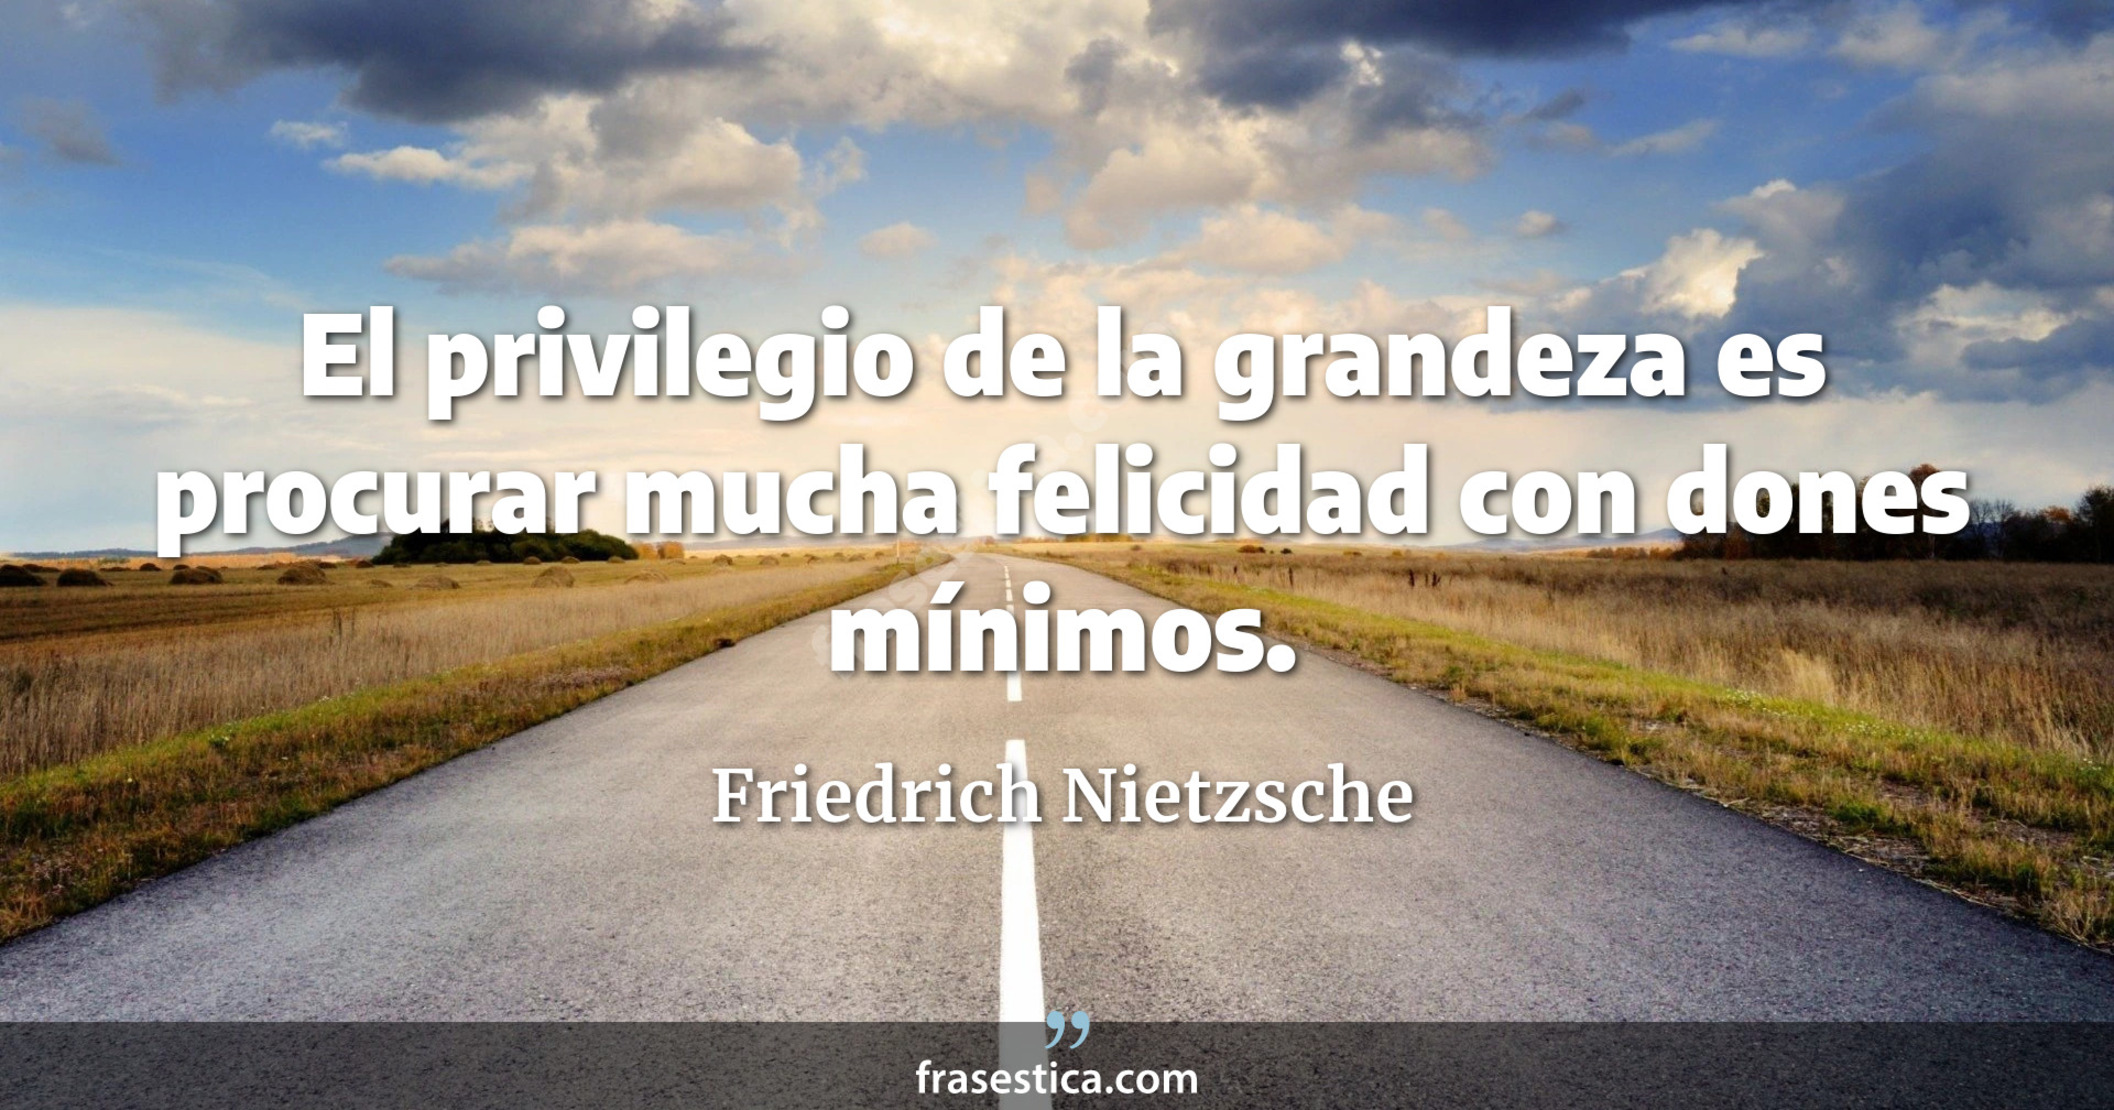 El privilegio de la grandeza es procurar mucha felicidad con dones mínimos. - Friedrich Nietzsche